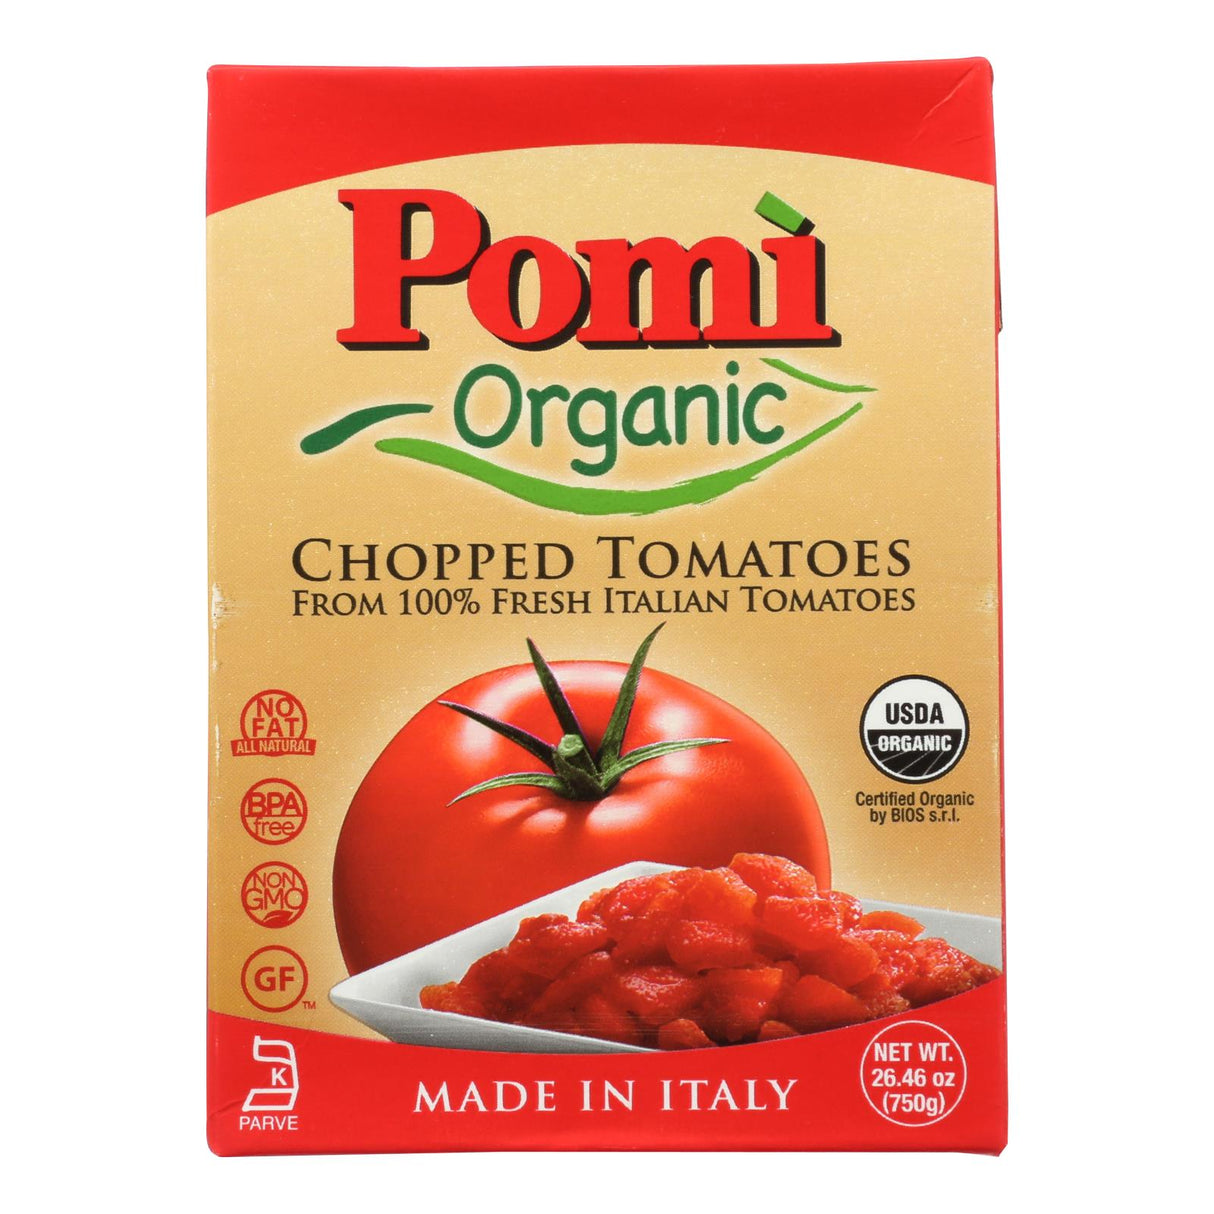 Pomi Organic Chopped Tomatoes - 12 Pack - 26.46 Oz - Cozy Farm 